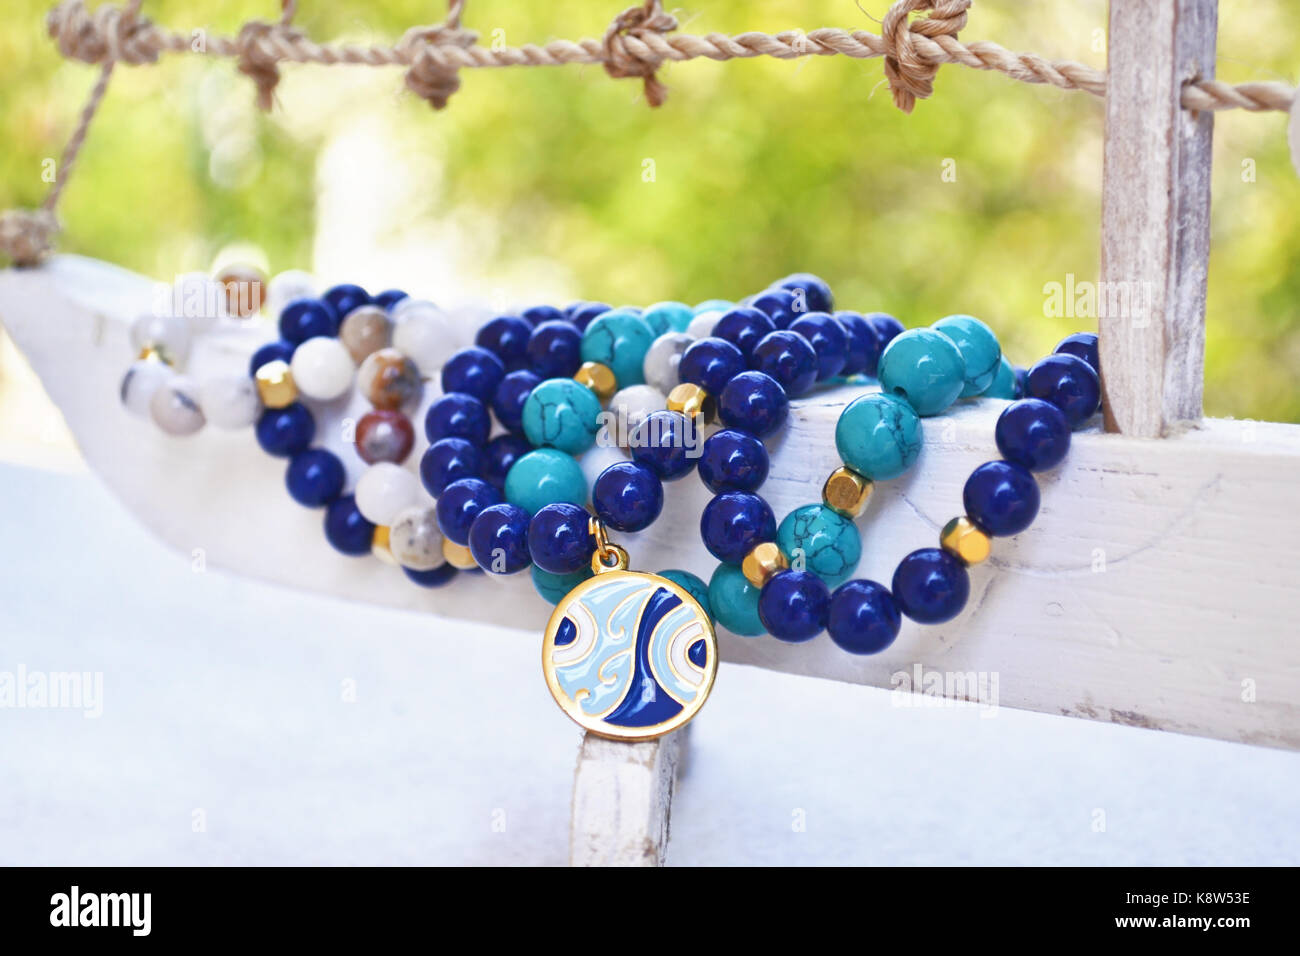 Blau Achat Edelstein Armbänder - griechischer Schmuck mit bösen Blick  Stockfotografie - Alamy